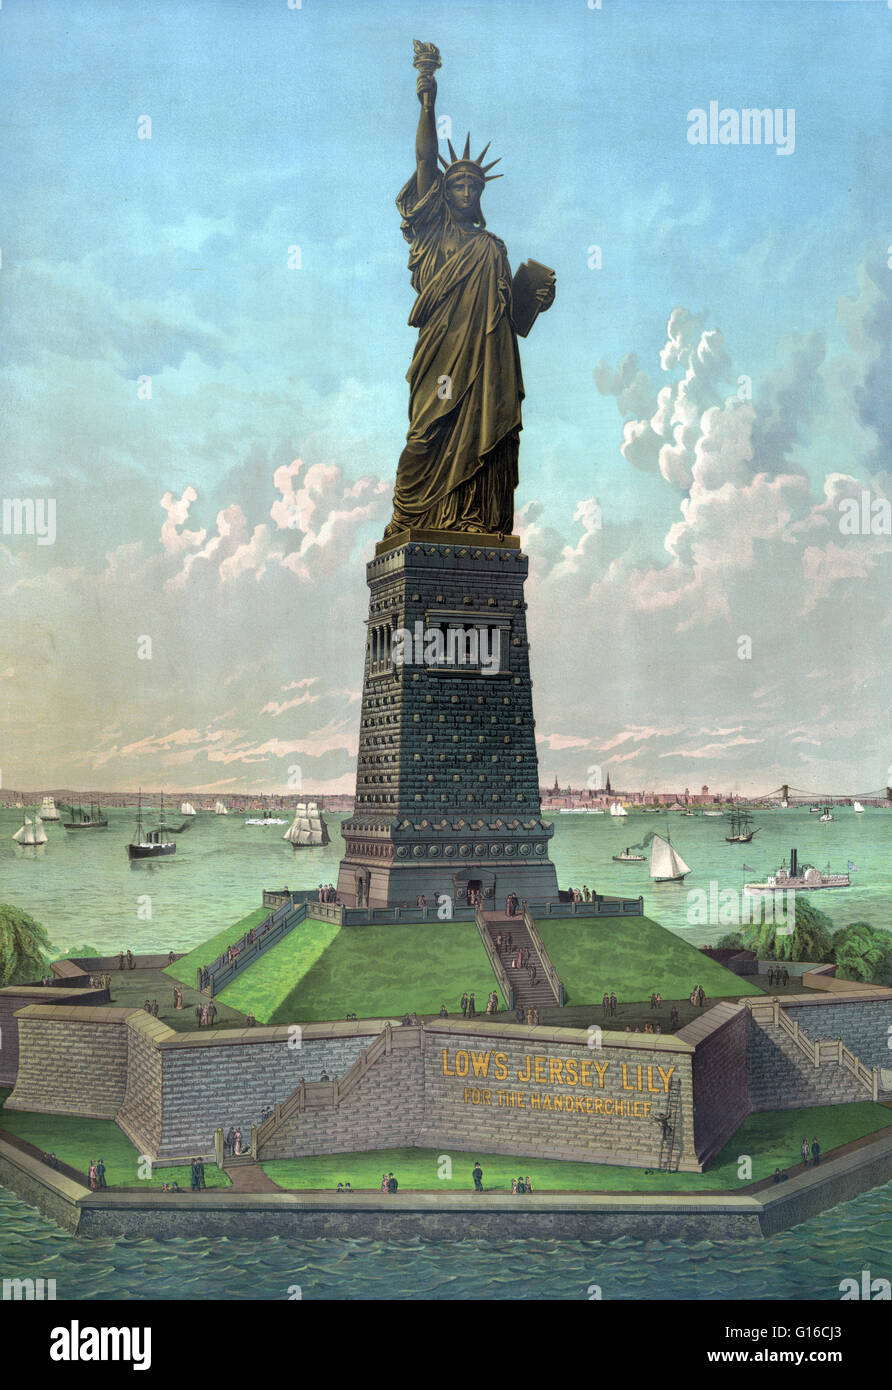 La Statue de la liberté est une colossale sculpture néoclassique sur Liberty Island à New York Harbor, conçu par Frédéric Bartholdi et consacrée le 28 octobre 1886. La statue, un don à l'Organisation des membres du peuple de France, est d'une femelle robe figu Banque D'Images